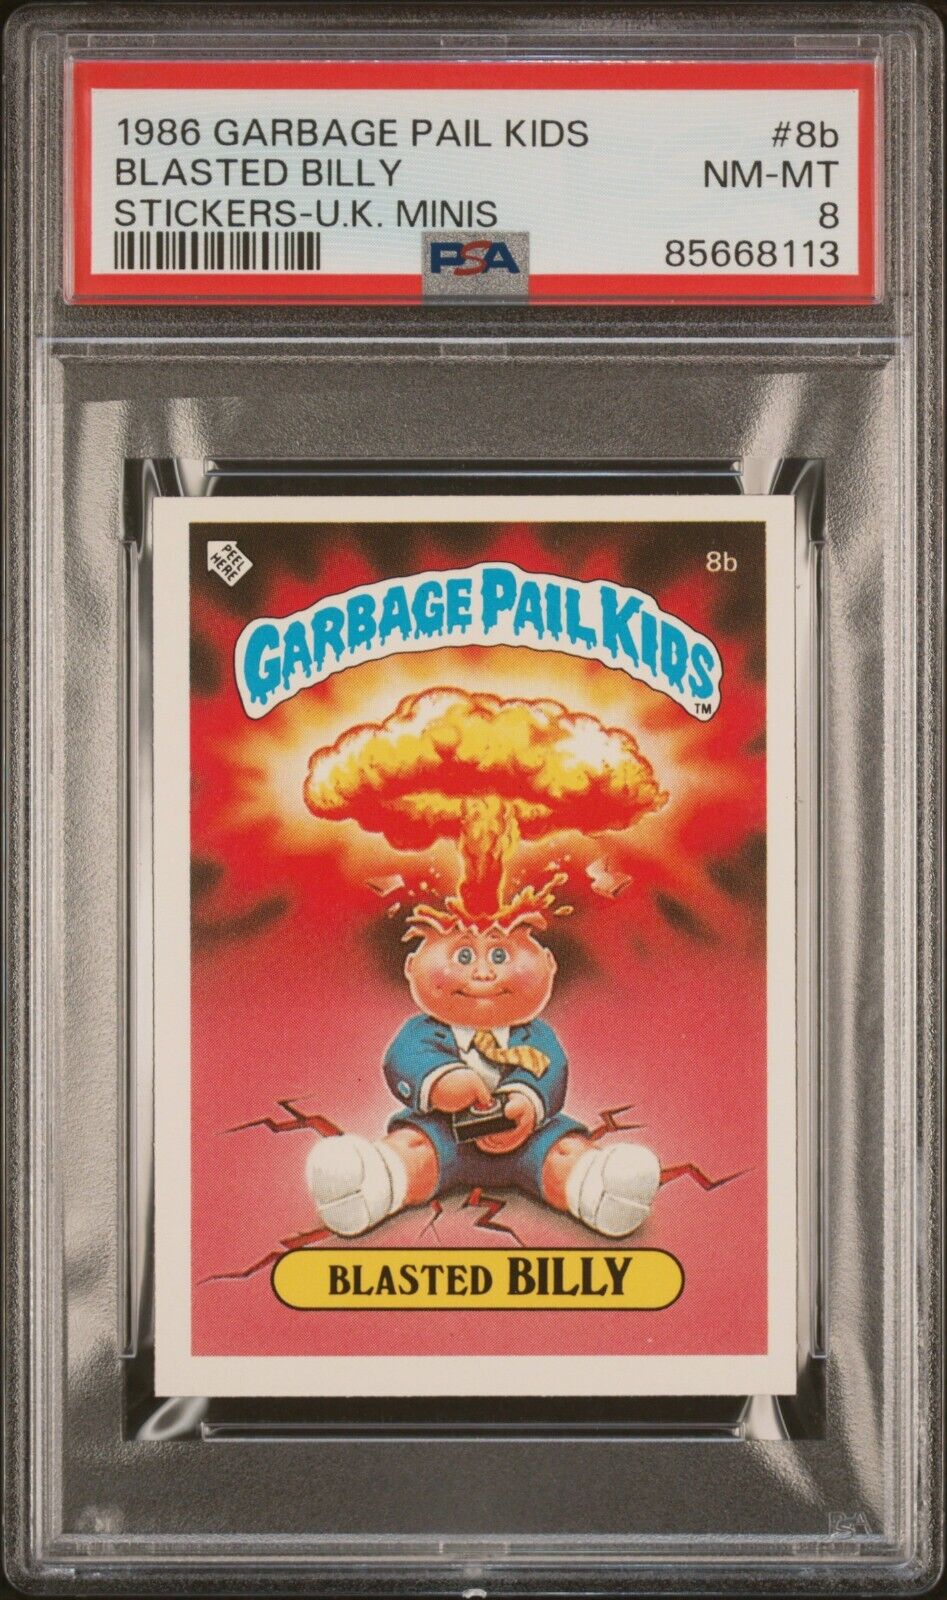 1986 Garbage Pail Kids OS1 Series 1 UK Mini BLASTED BILLY 8b Card PSA 8 NM-MT